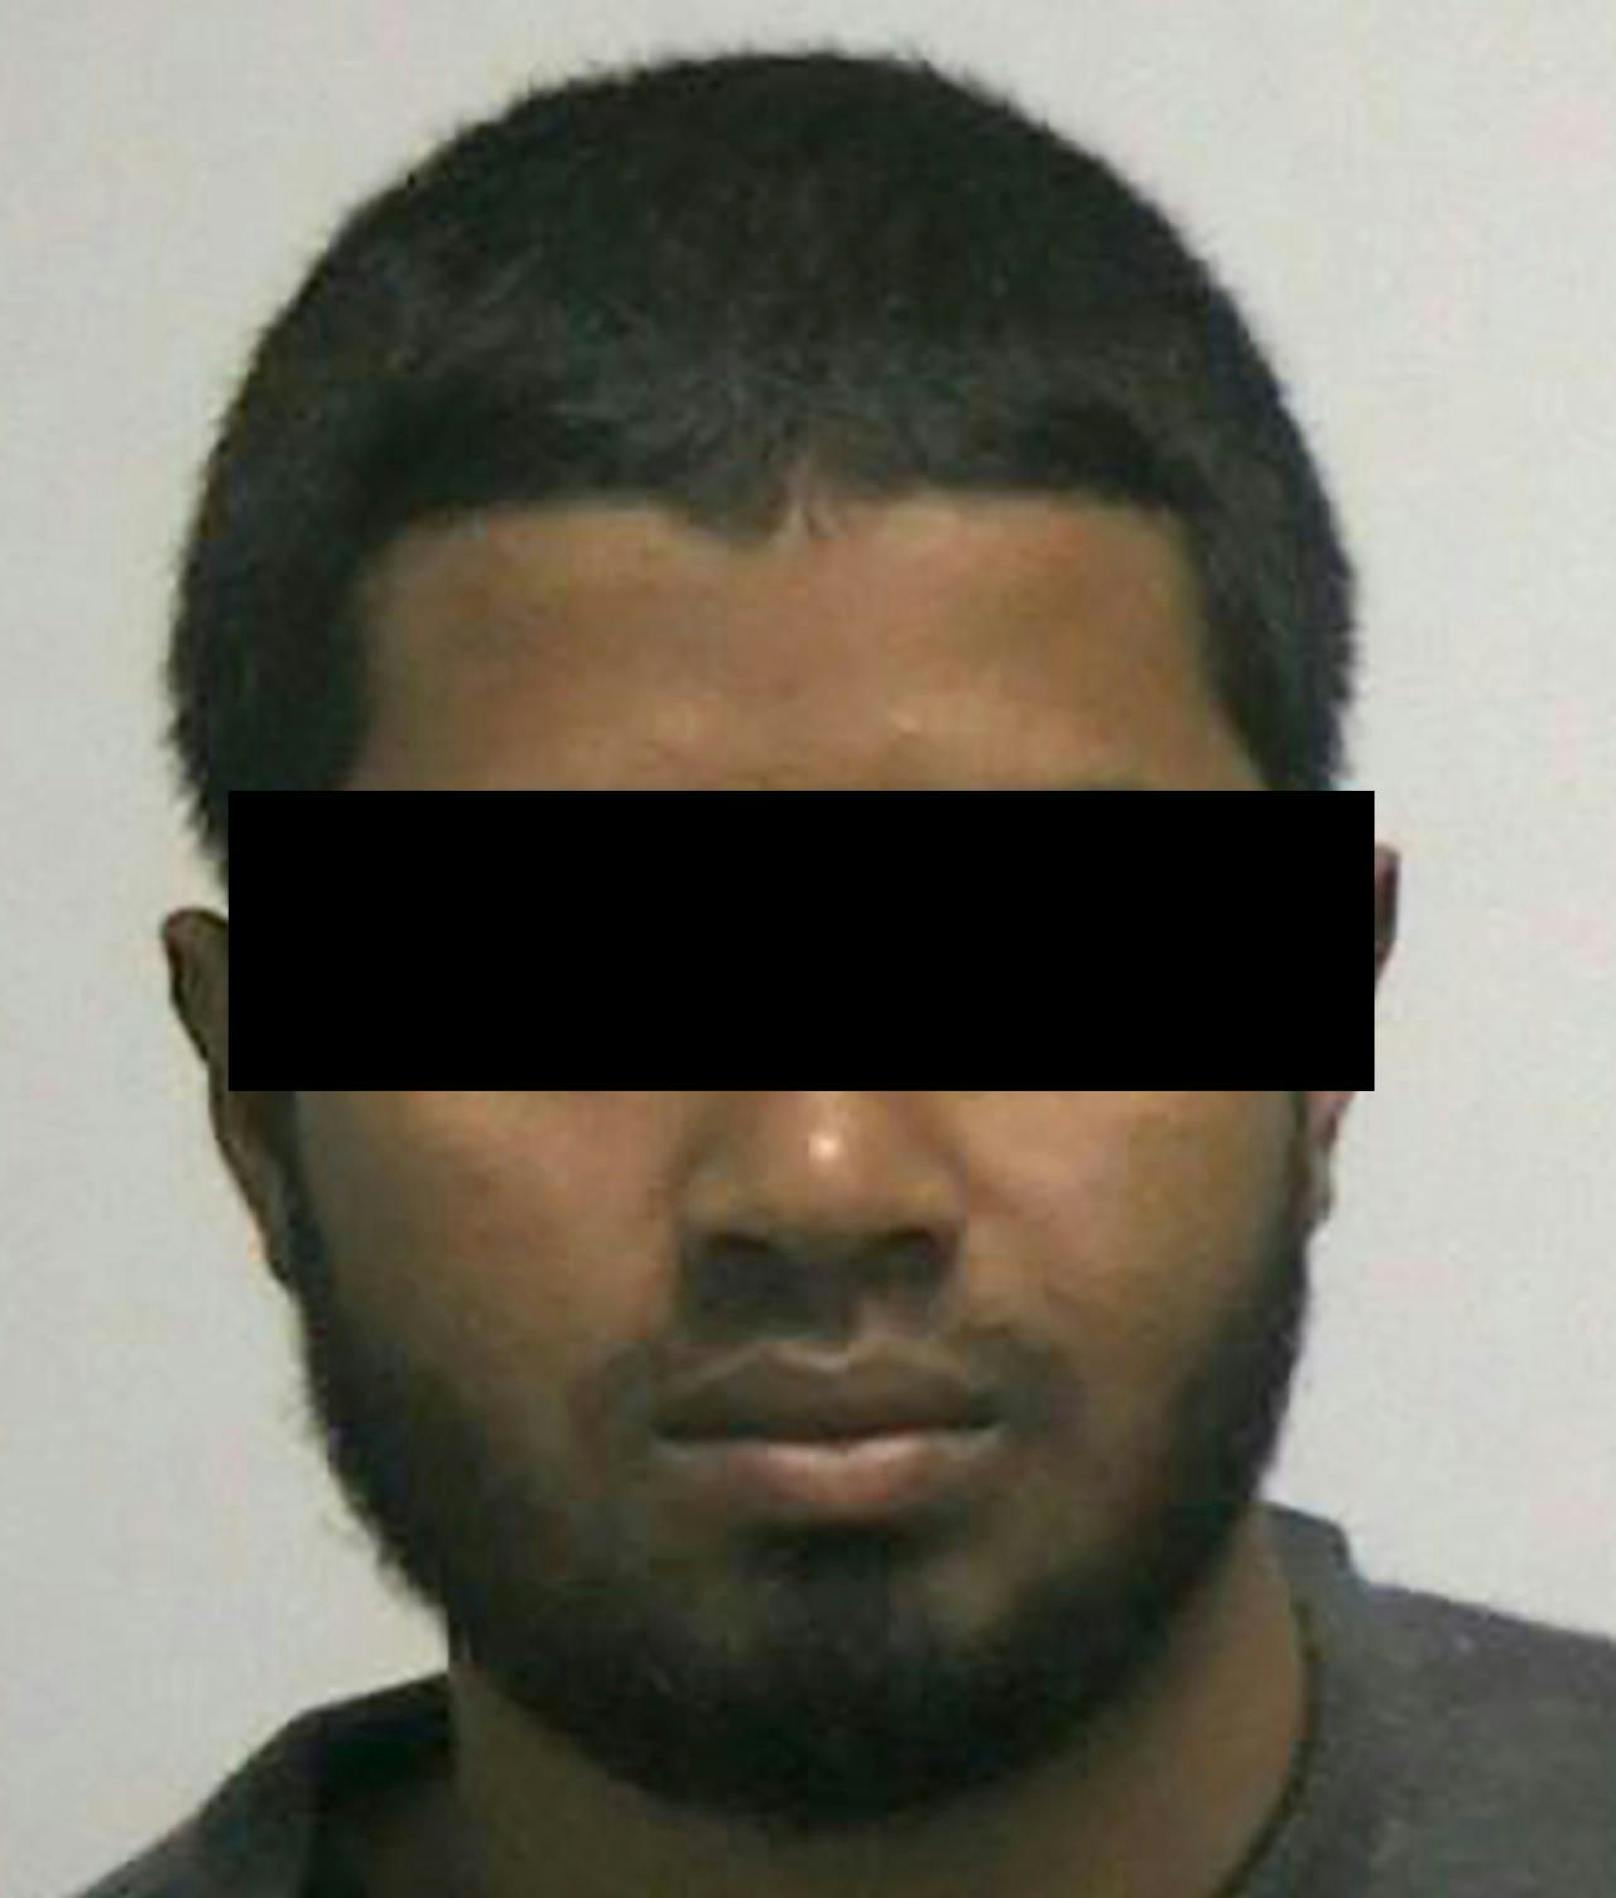 Attentäter Akayed Ullah (27) zündete in New York eine Bombe.
